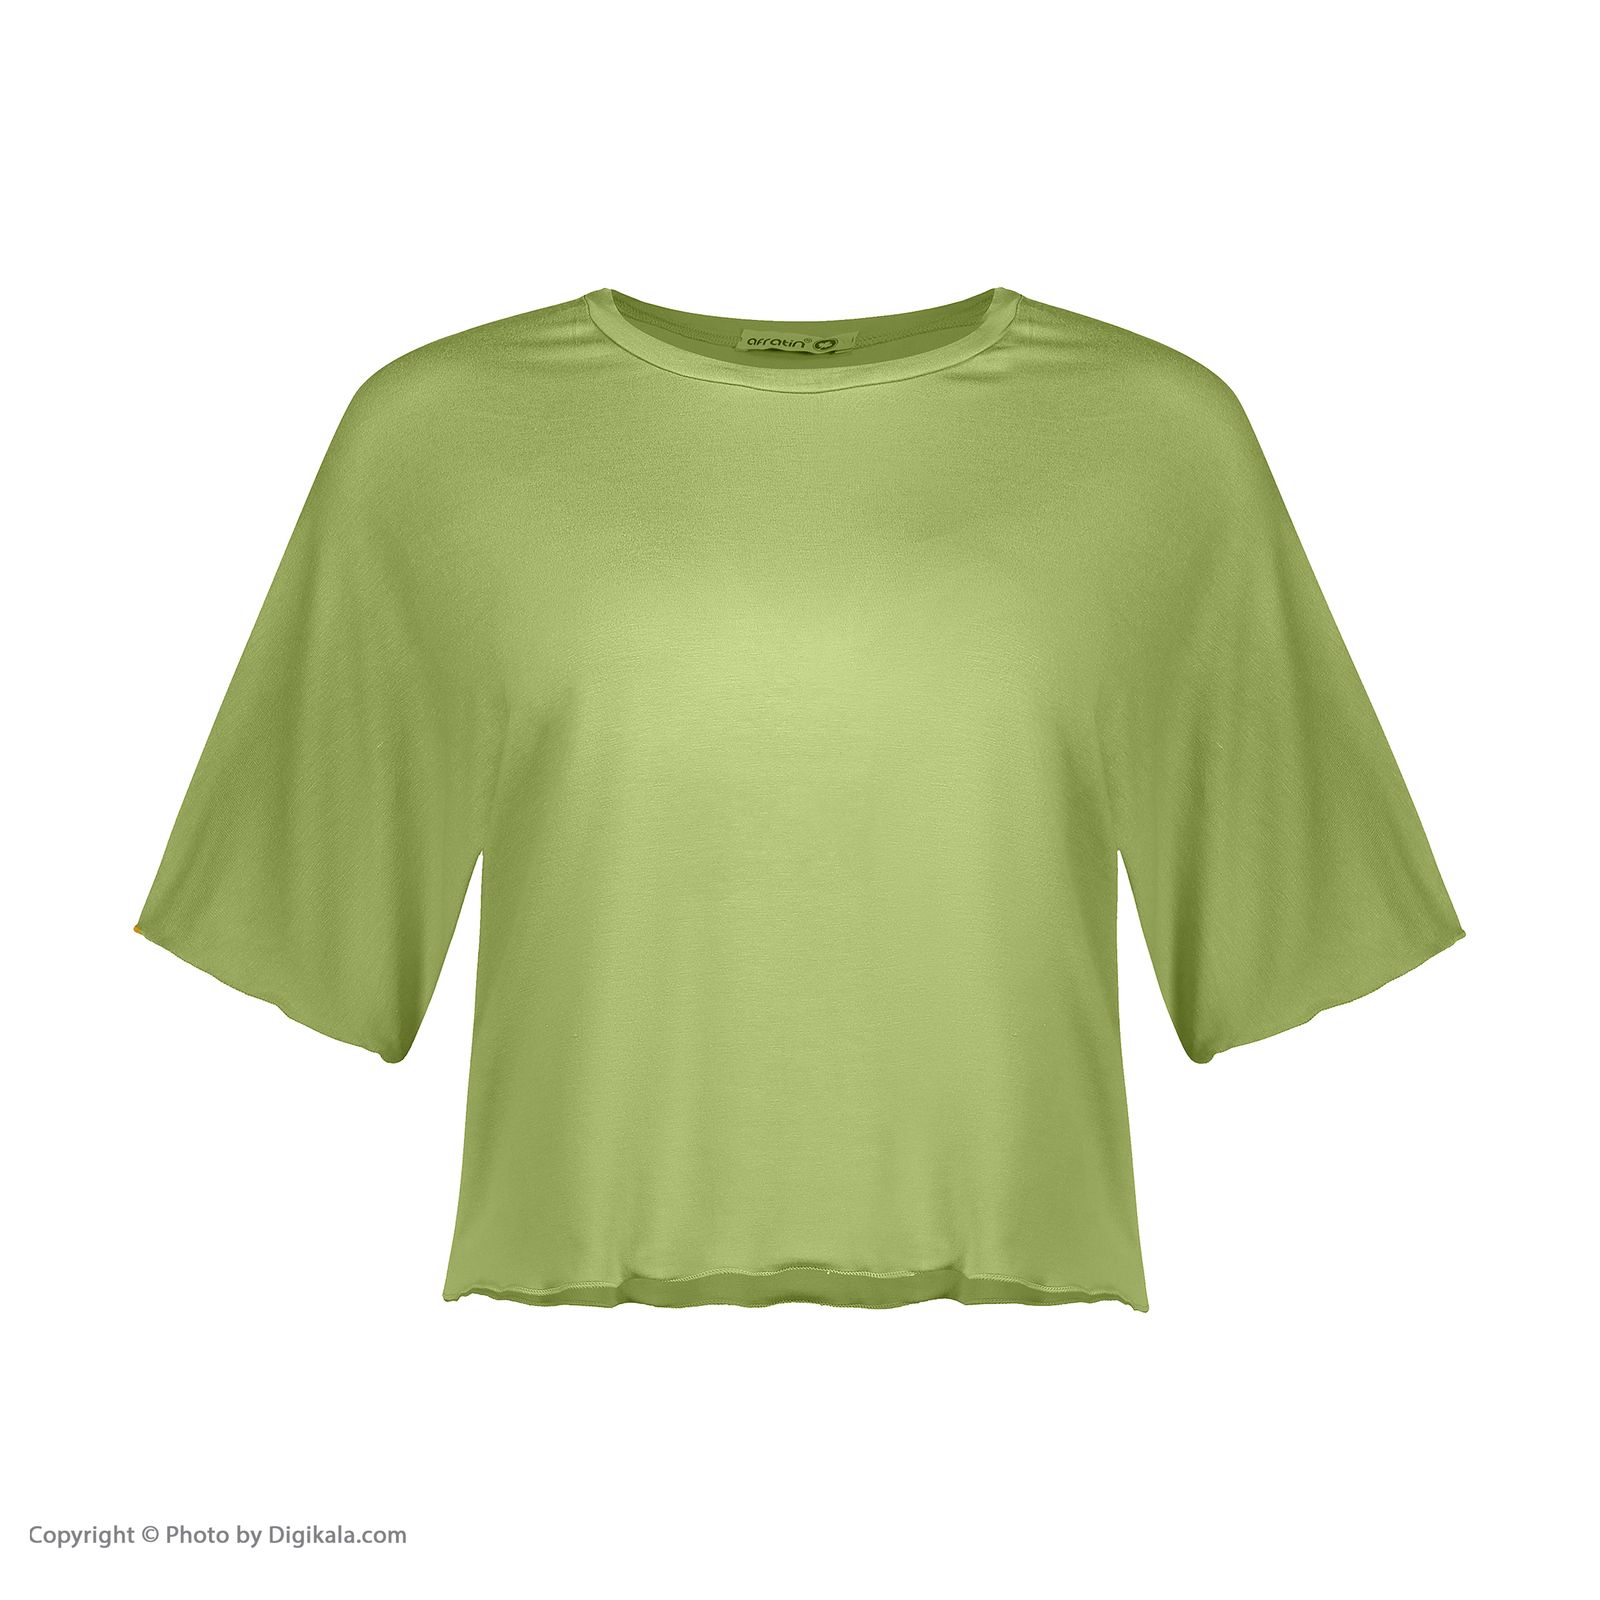 ست تیشرت و شلوارک زنانه افراتین مدل آرام رنگ سبز -  - 6